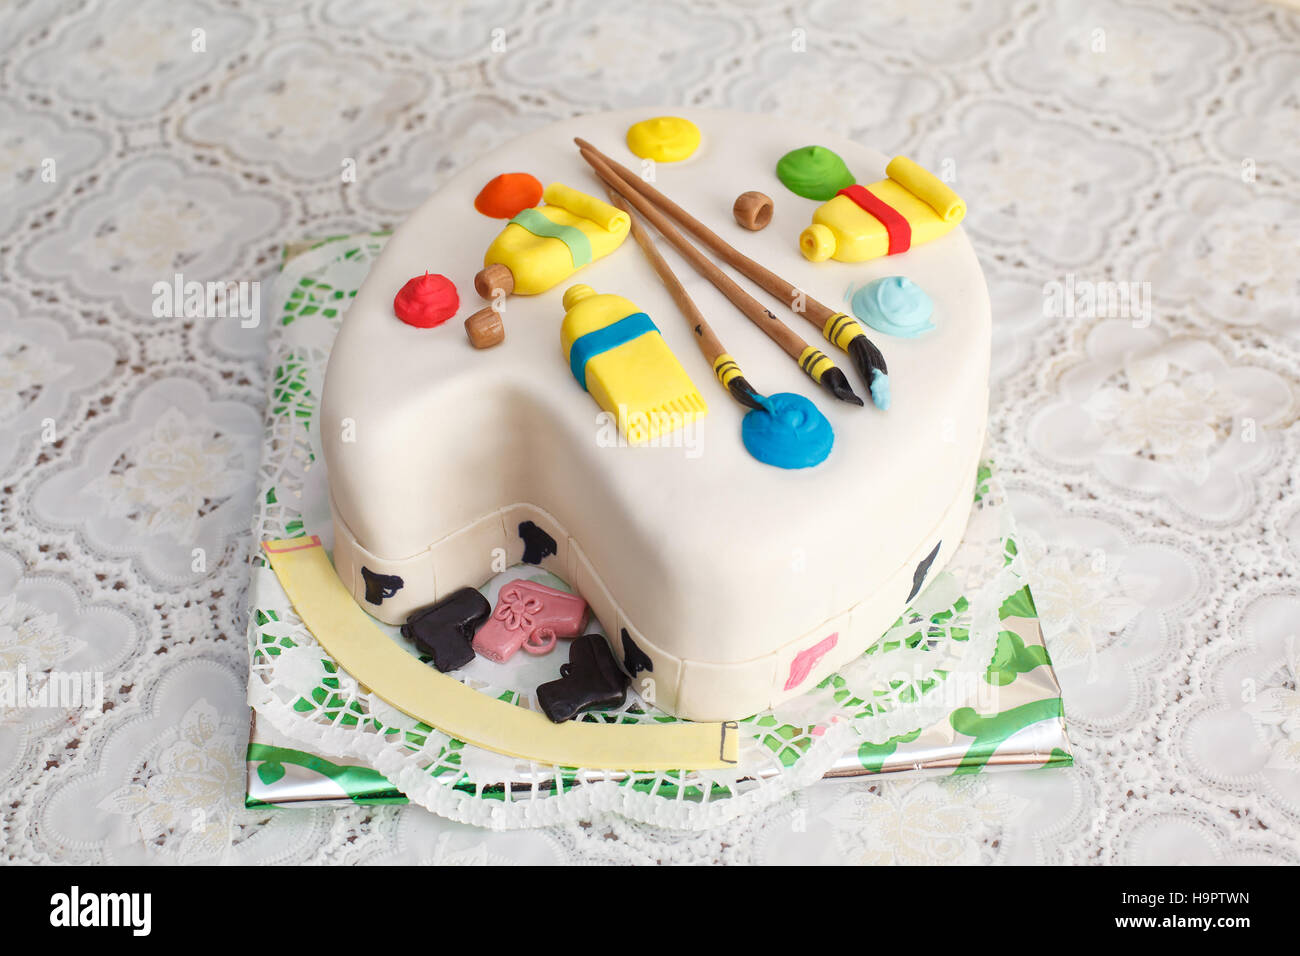 Paint brush art cake, chocolate sponge, fondant paintbrush, vibrant colors.